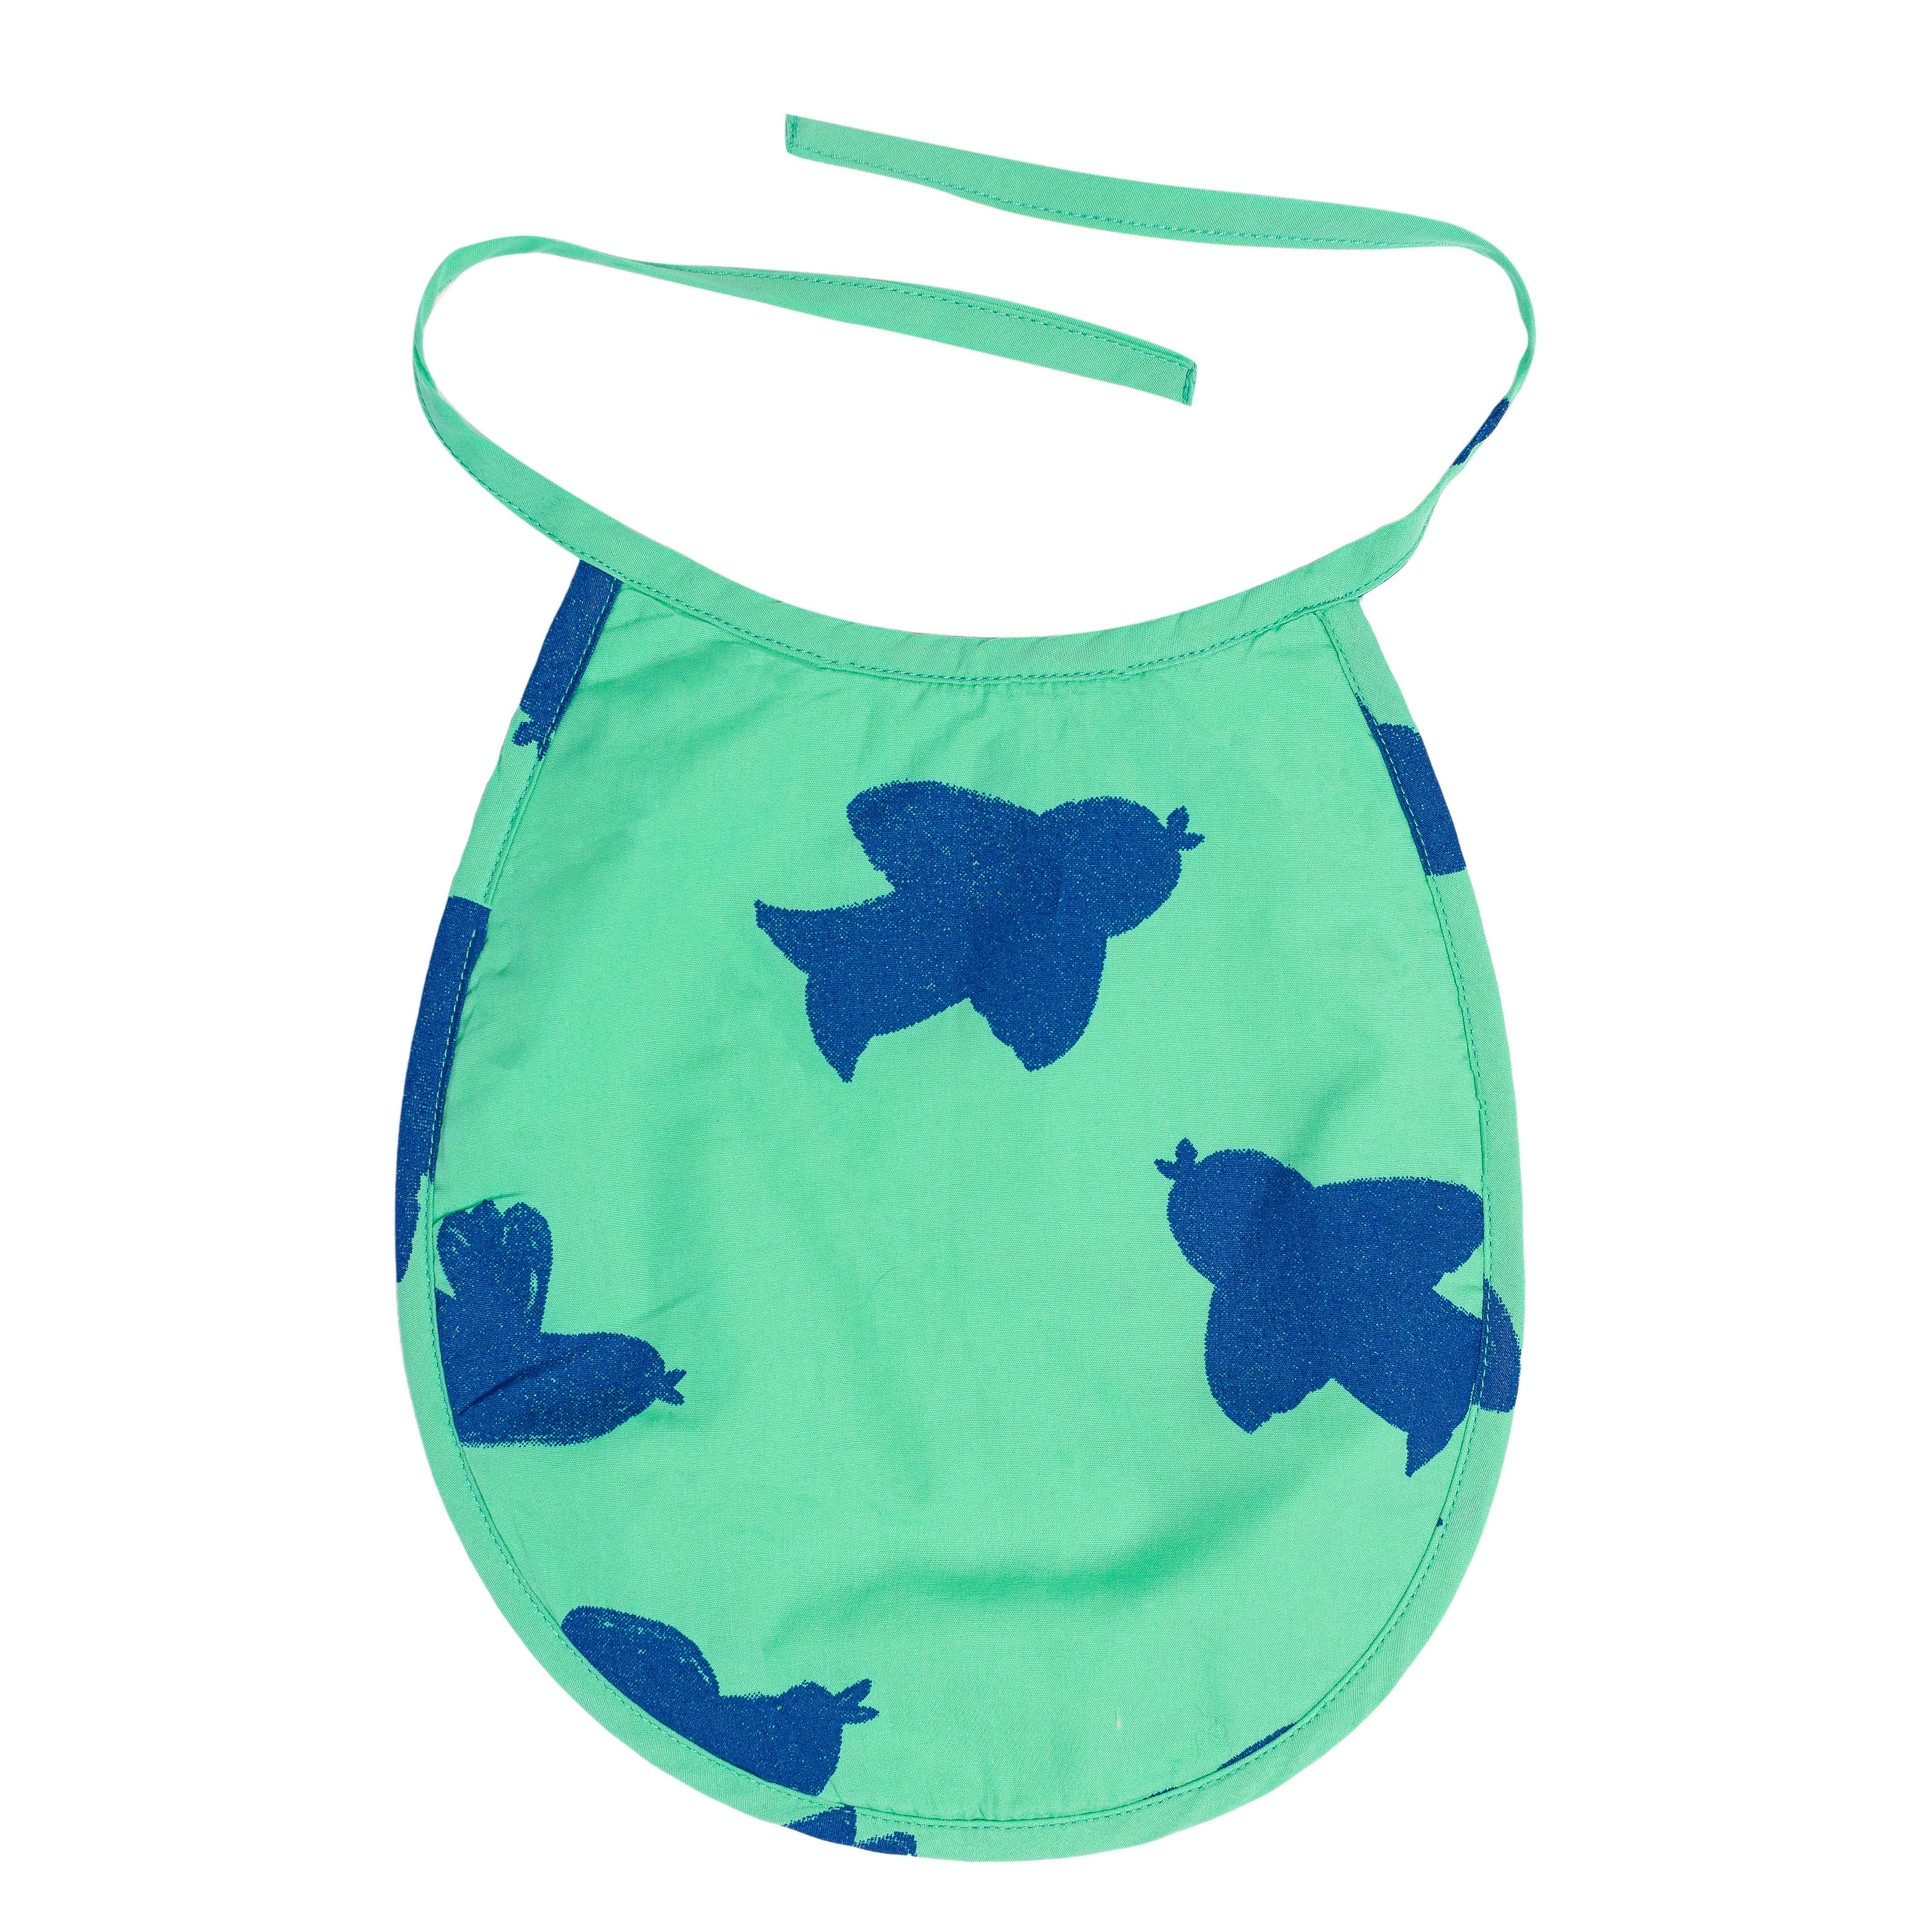 Bavoir à nouer, collection Baby Care, imprimé vert motif oiseaux bleus